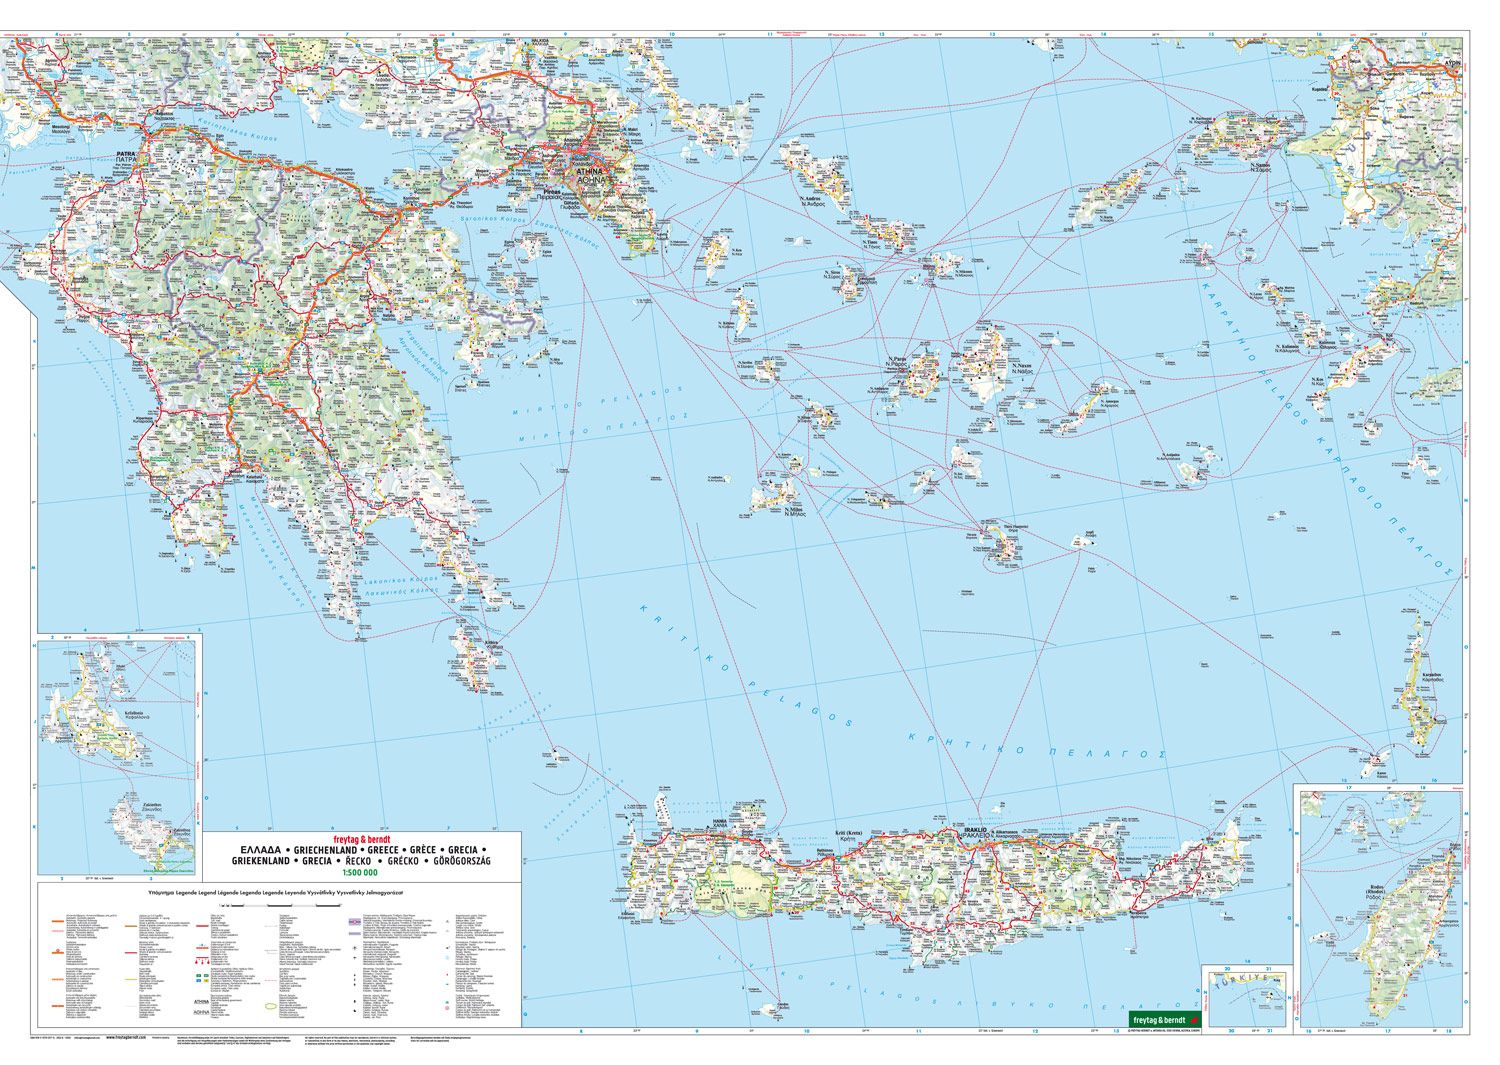 Griechenland-Straßenkarte-1:500.000 - Fretag&Berndt